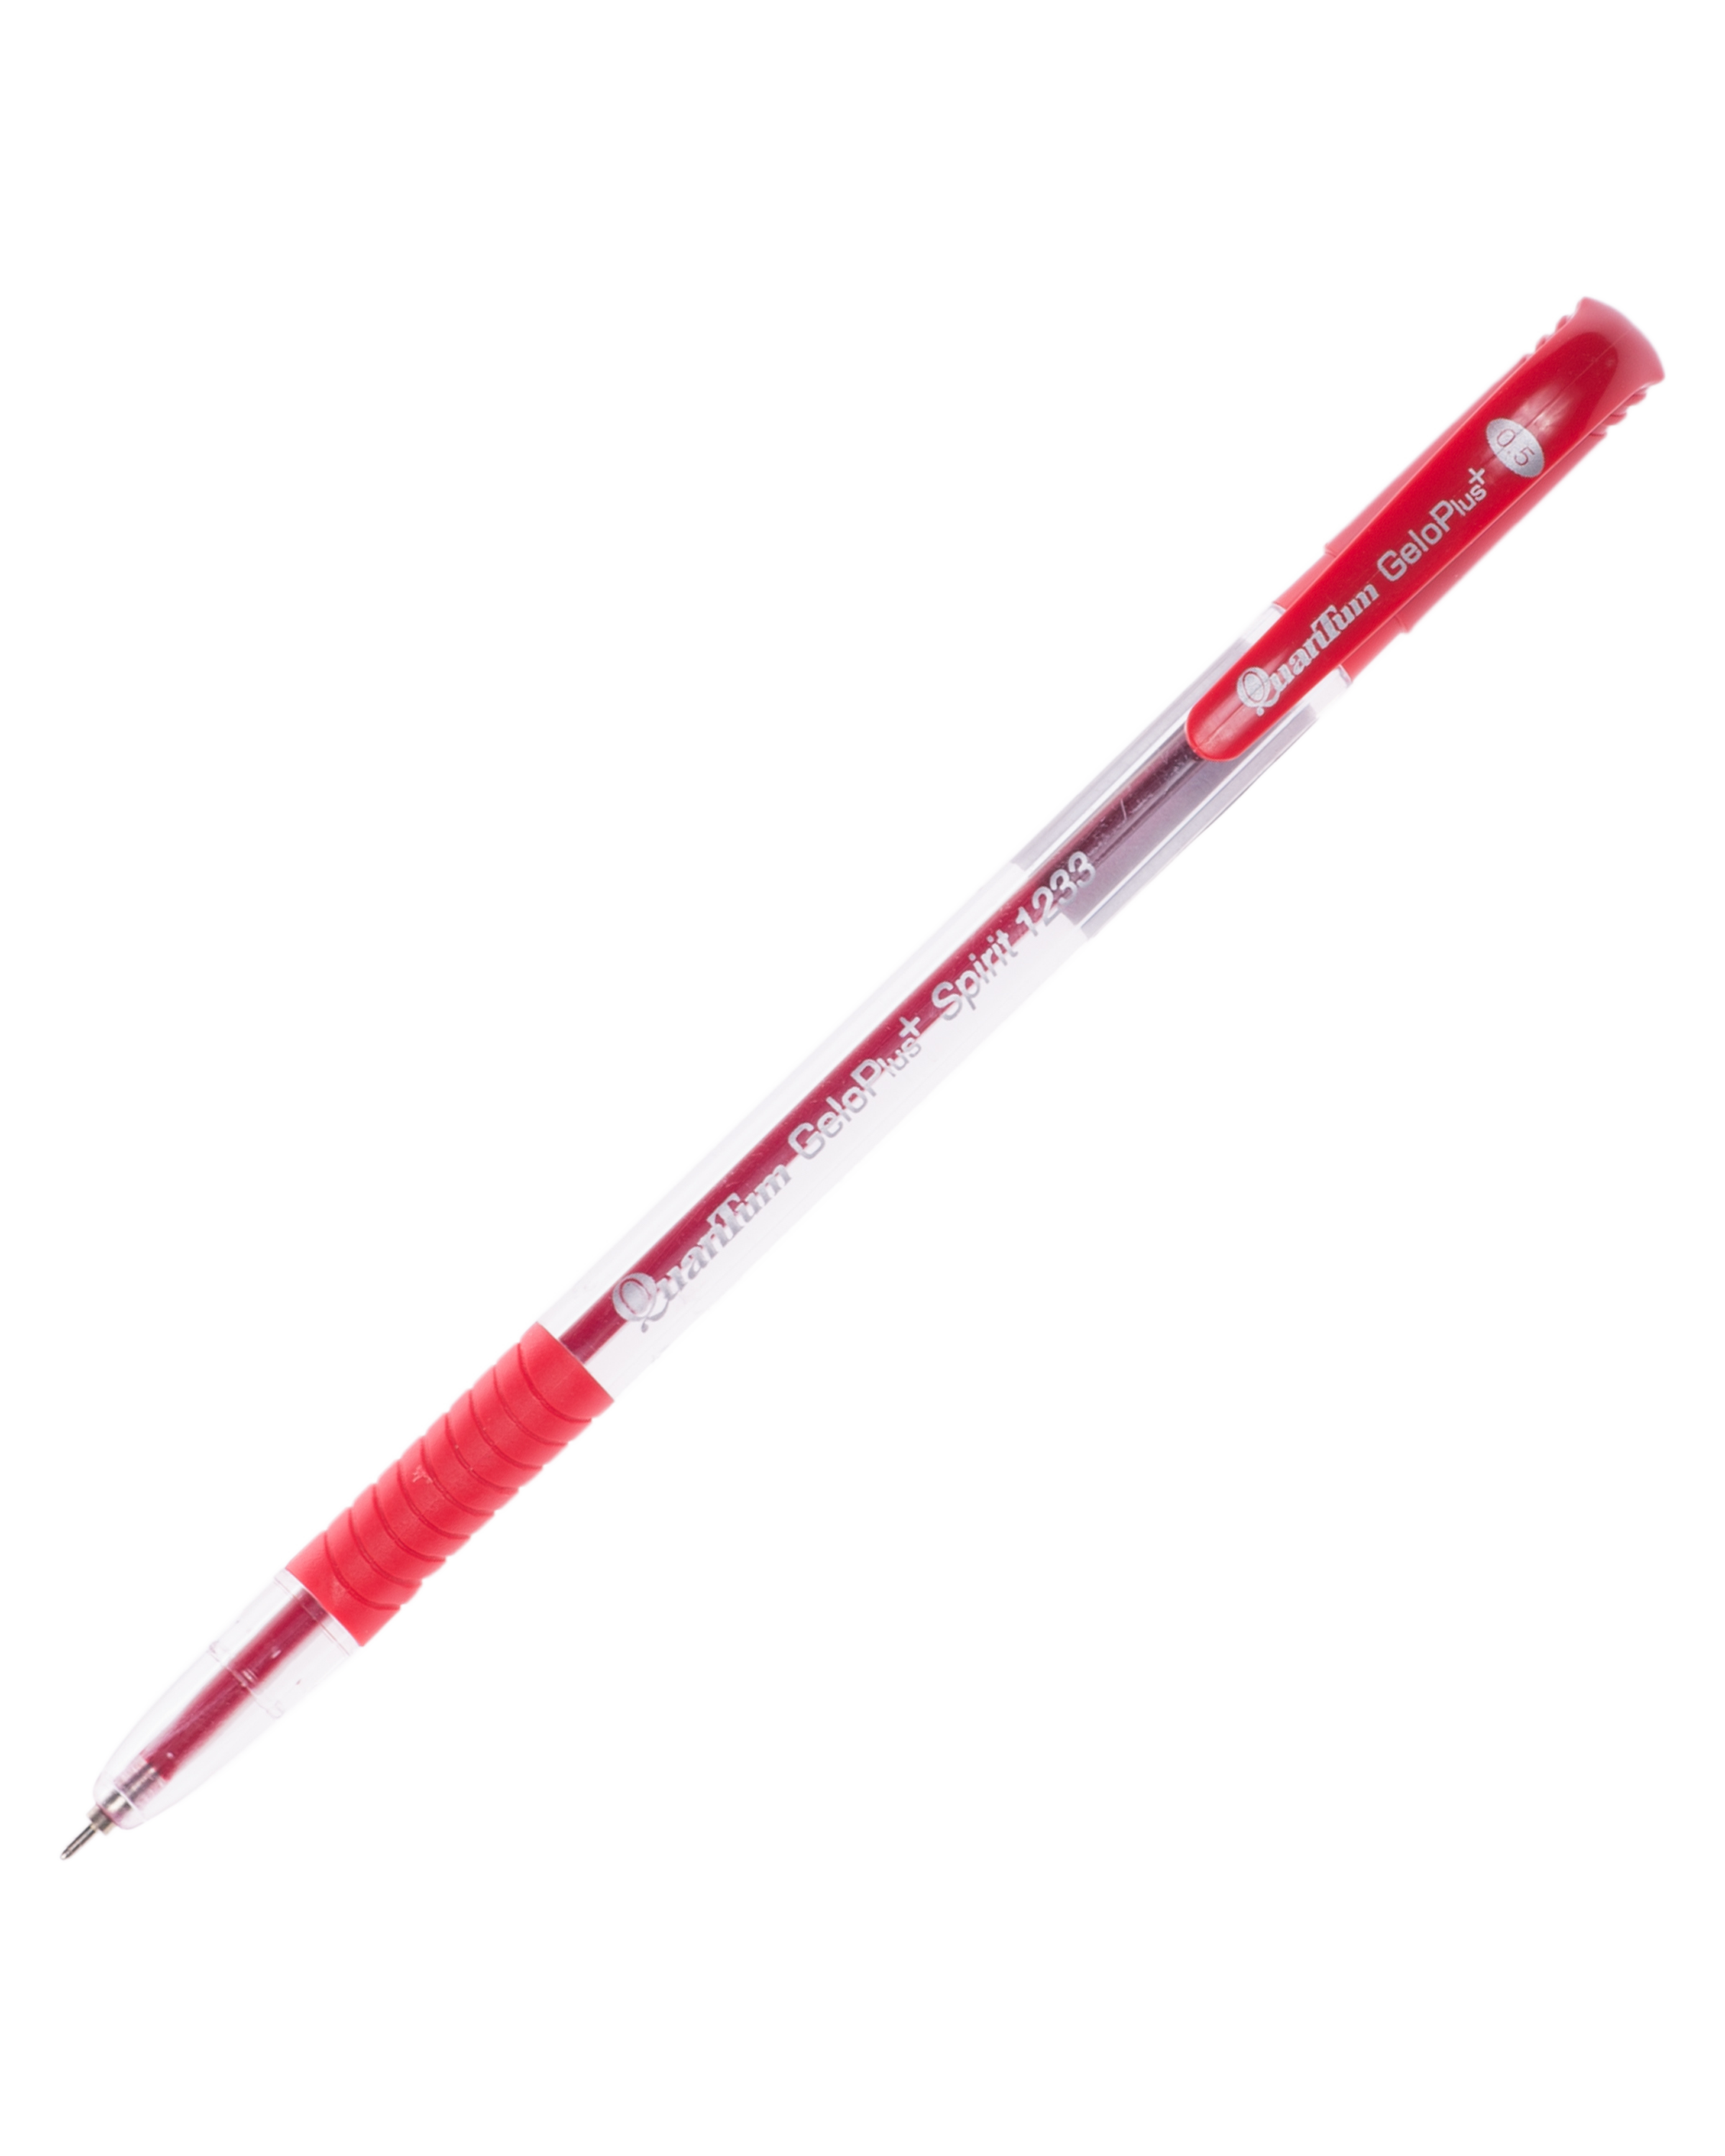 ปากกาQuantumเจลโล่พลัสสปิทริท  1233 แดง